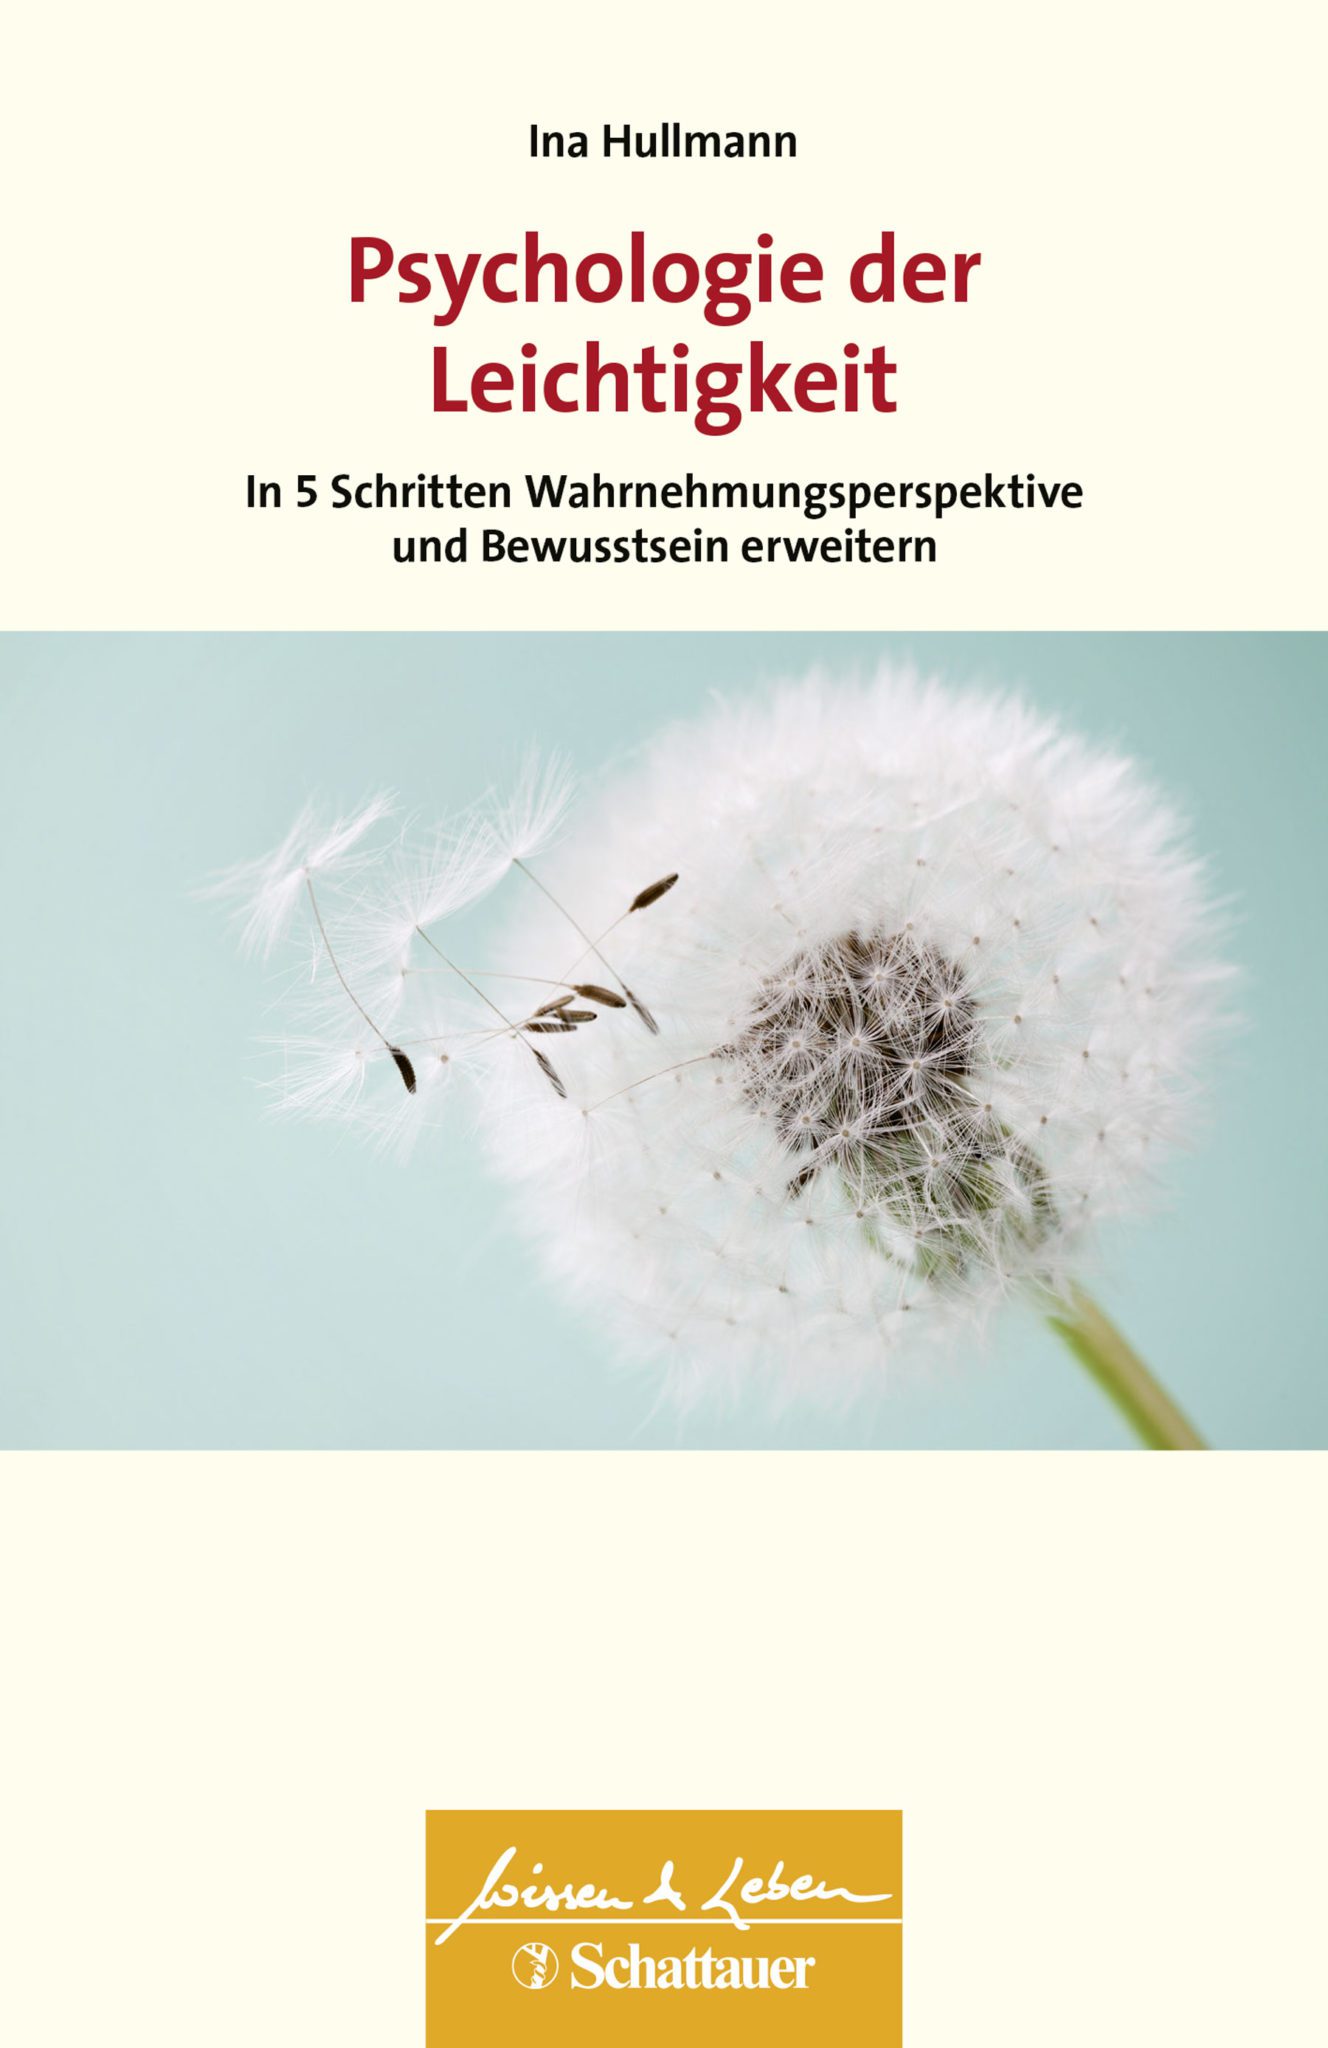 Ina Hullmann - Psychologie der Leichtigkeit 9783608400380 Buch Cover